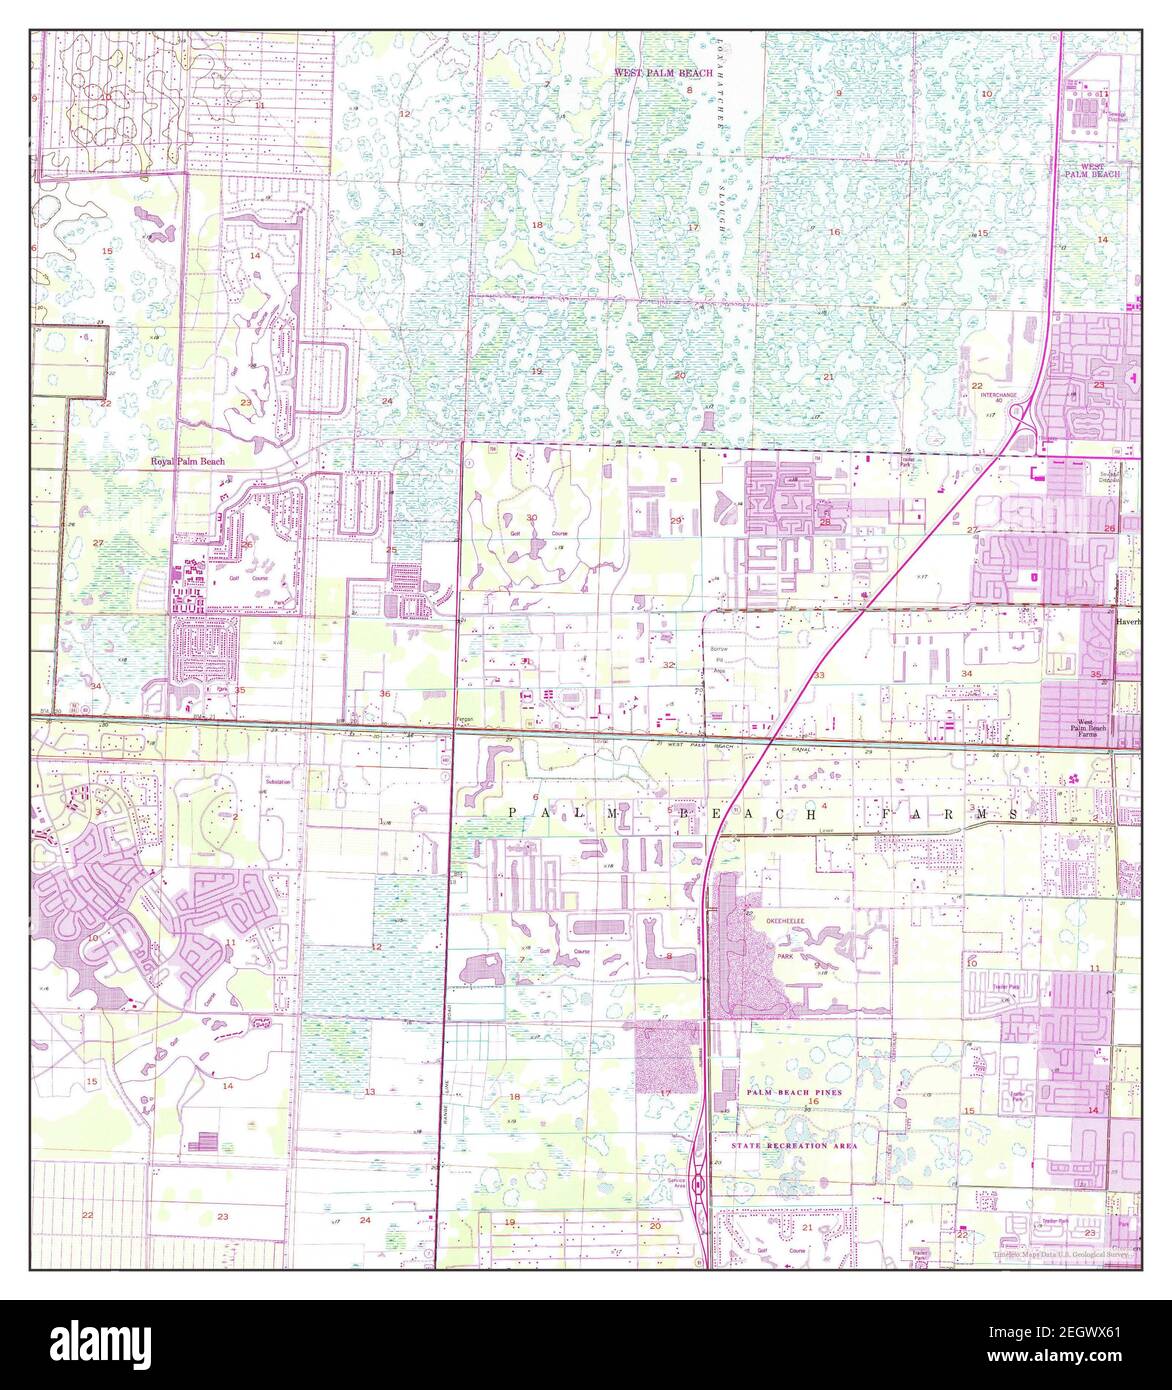 Palm Beach Farms, Florida, MAP 1946, 1:24000, Estados Unidos de América por Timeless Maps, data U.S. Geological Survey Foto de stock